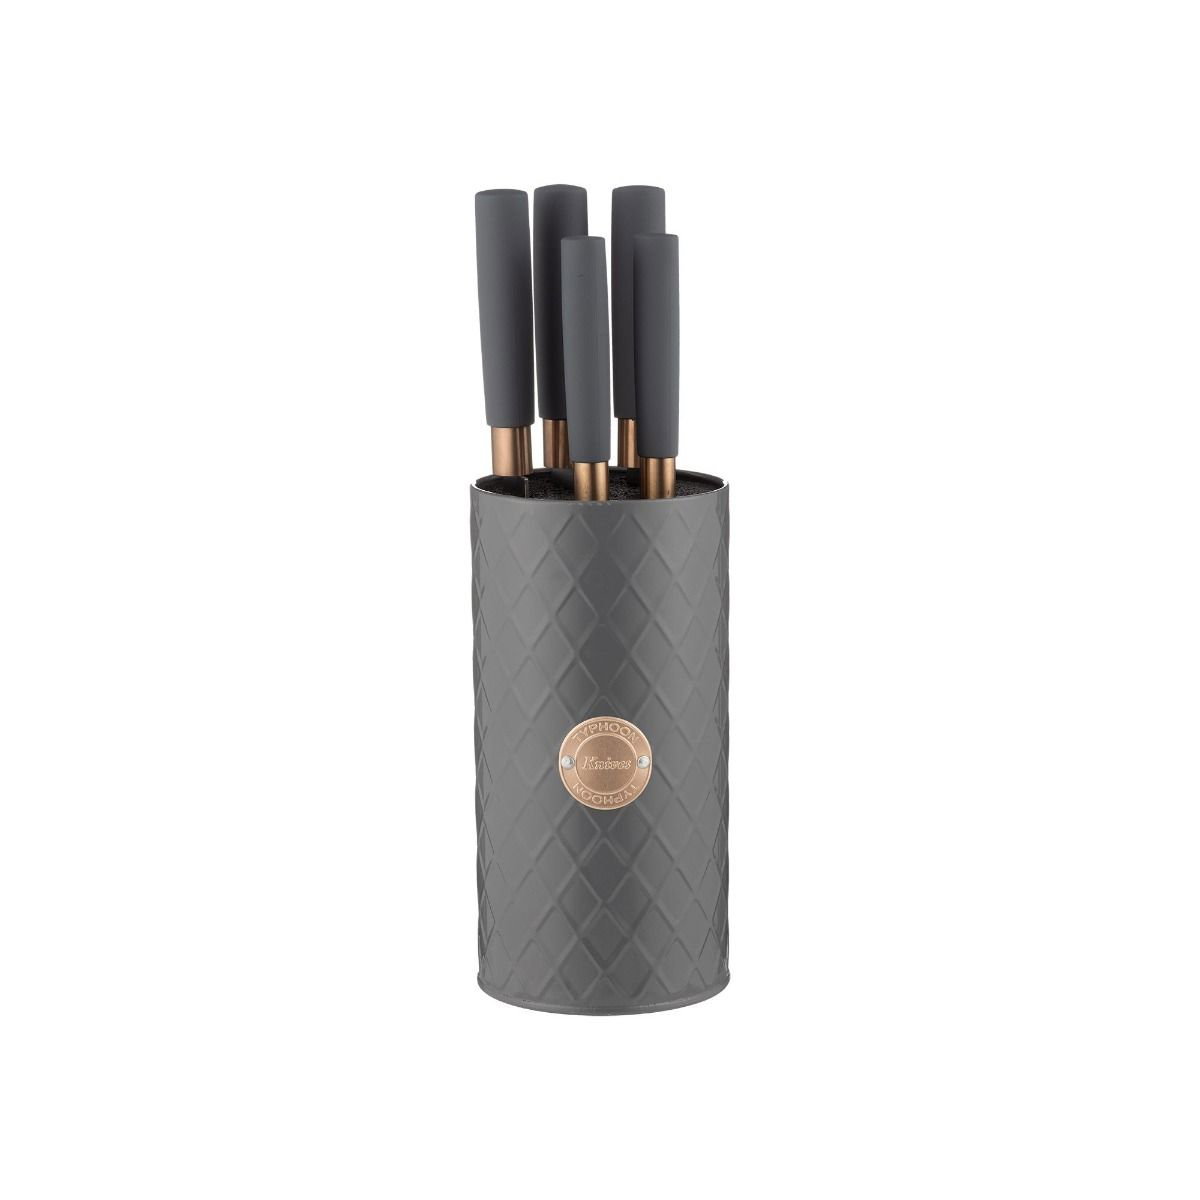 Titan Copper 6 Pce Knife Block Giftbox